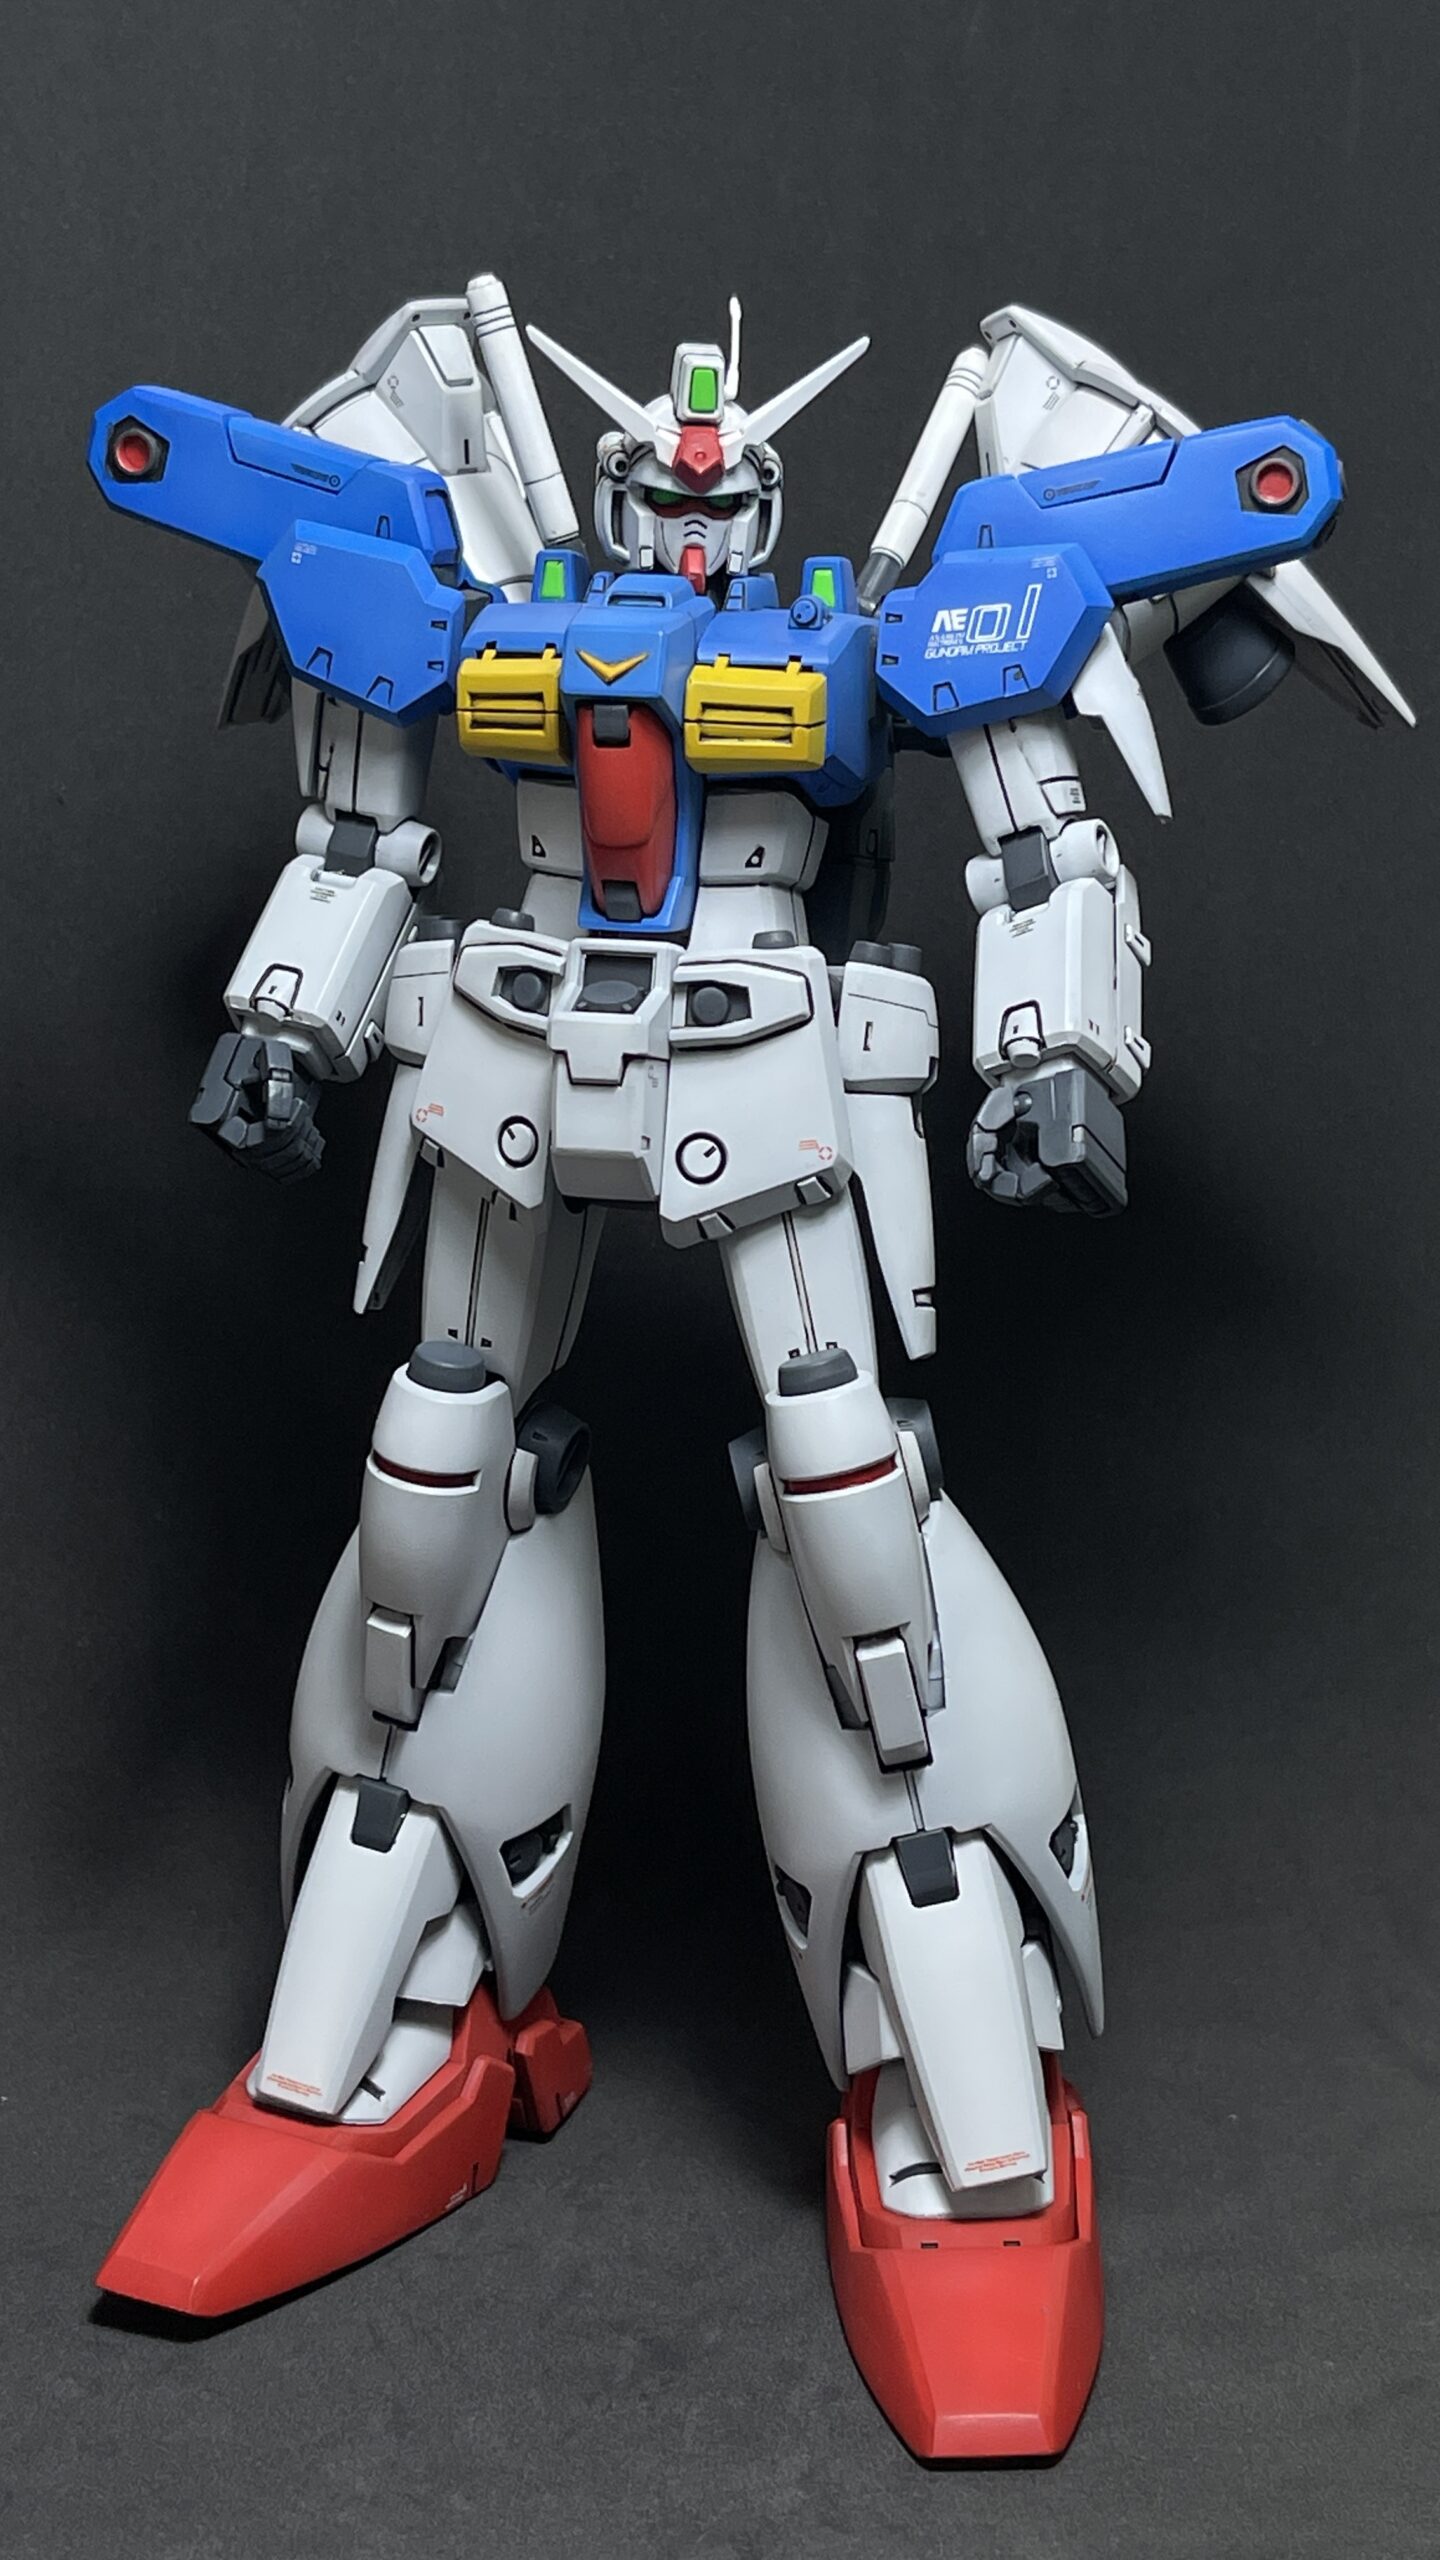 [ShowOff] RX-78GP01-Fb Gundam "Zephyranthes" Full Burnern 1/100 โดย BOY